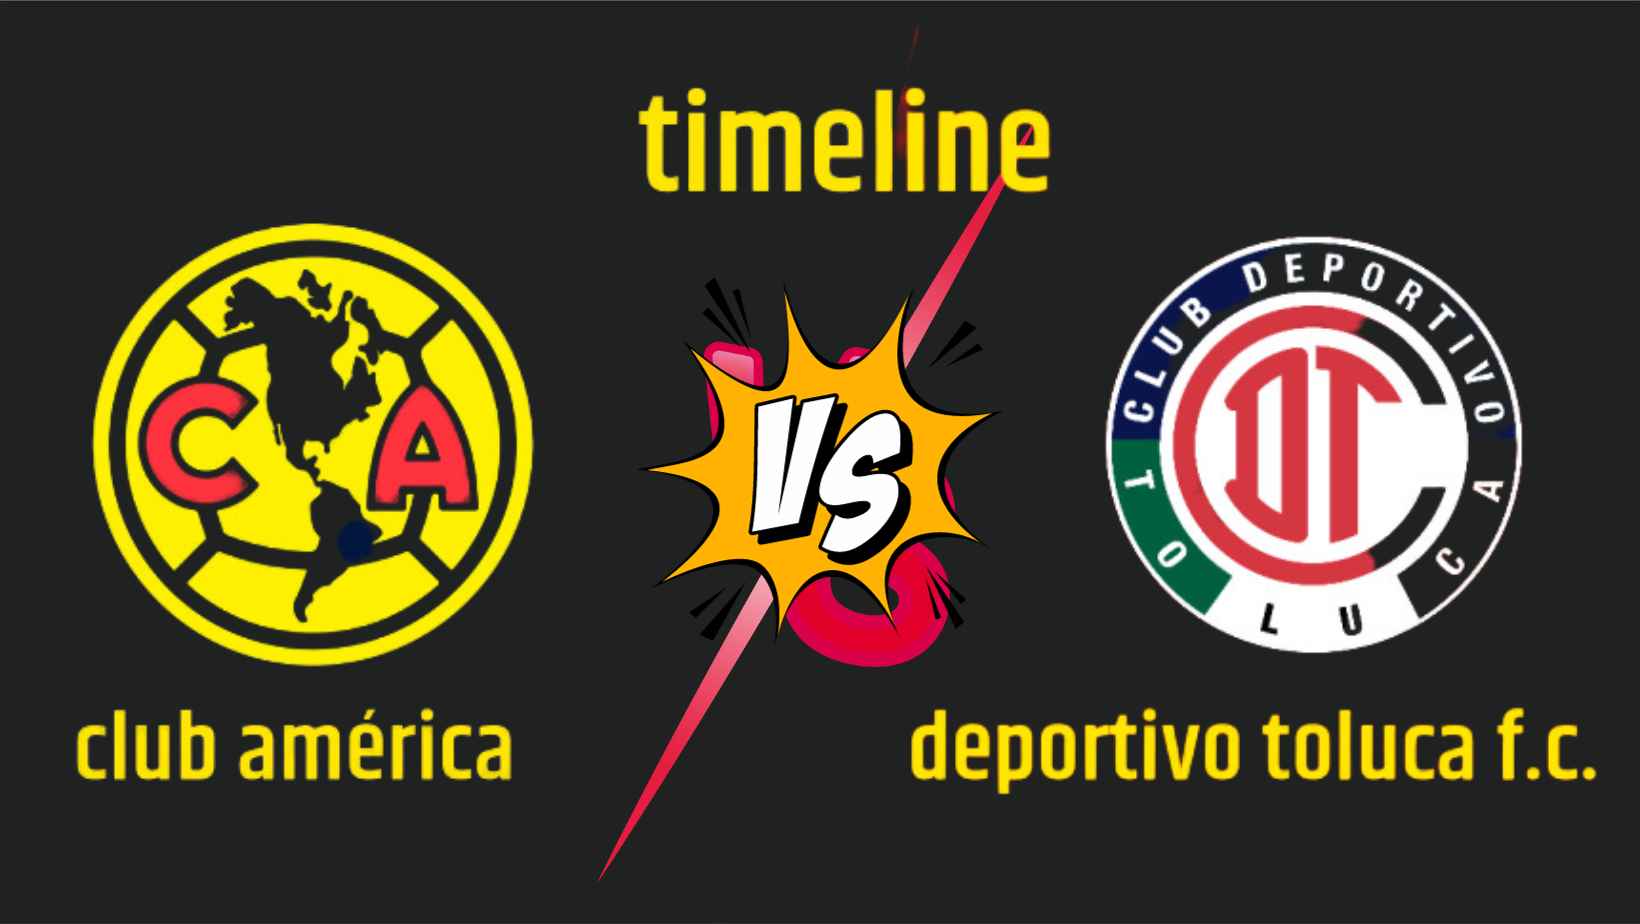 club-america-vs-deportivo-toluca-f.c.-timeline